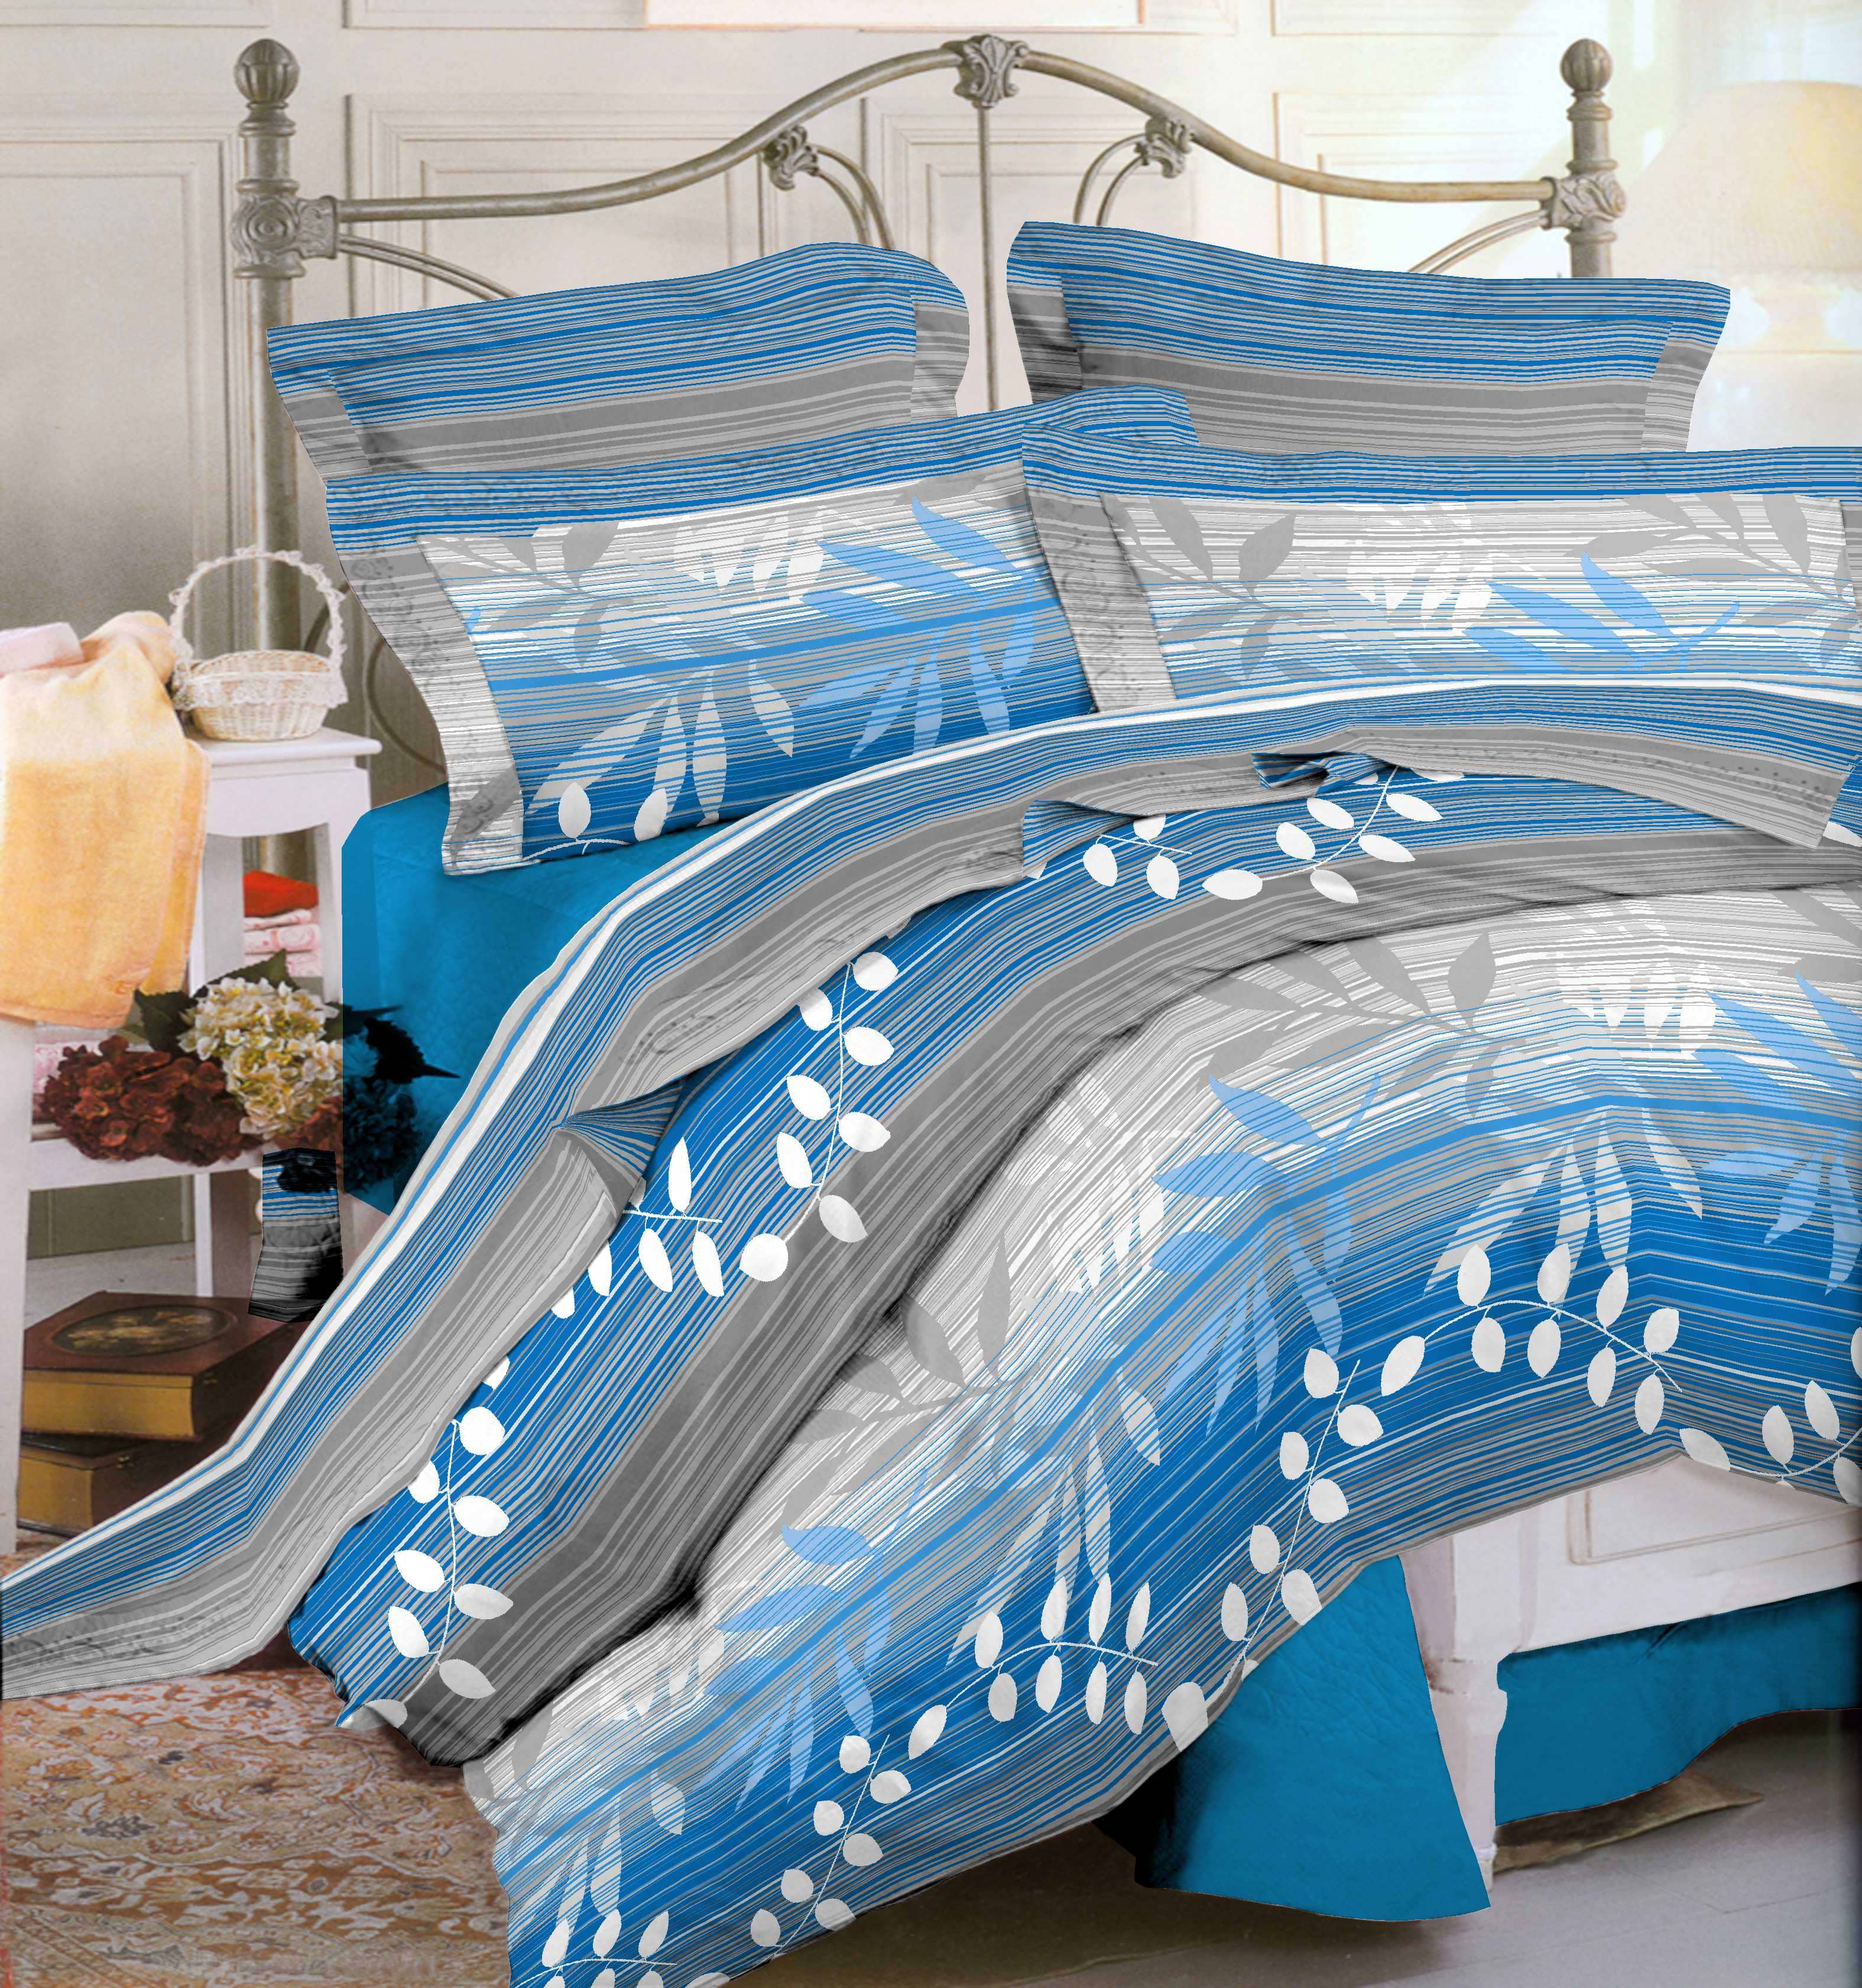 סט מצעים 4 חלקים למיטה זוגית 100% כותנה 200*160 דגם נועה צבע כחול מבית תודן